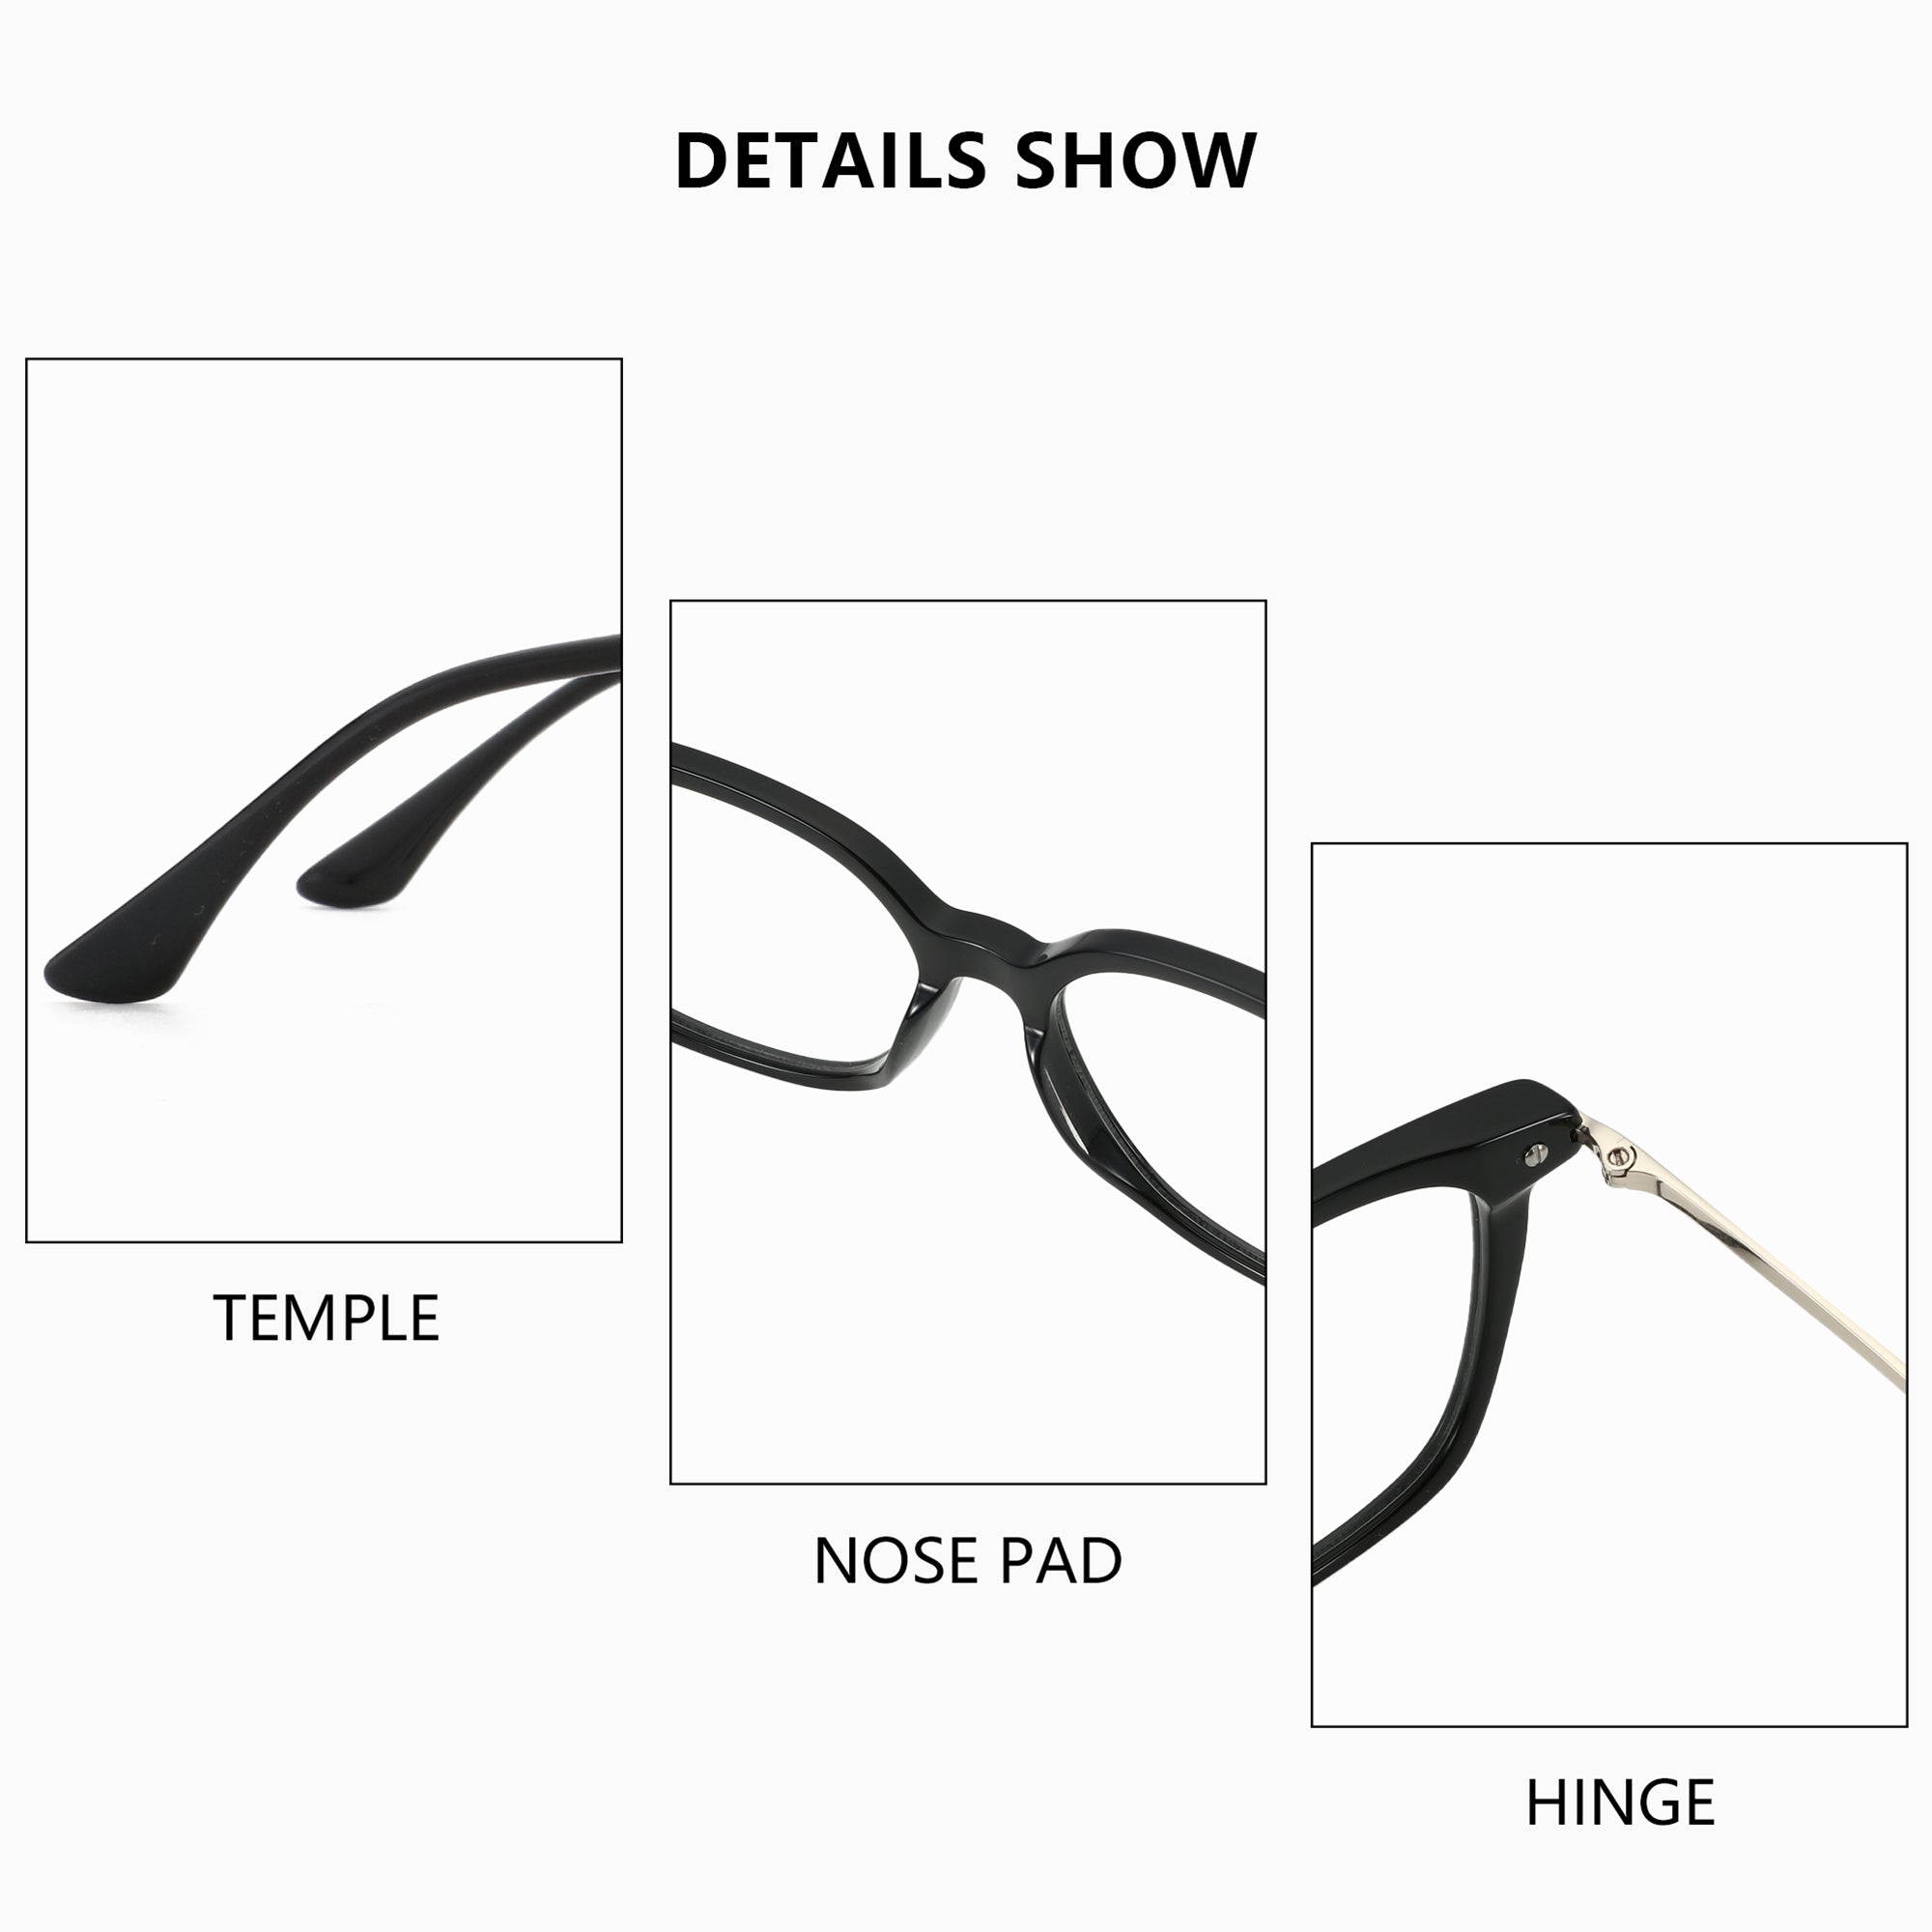 Zenottic Eyeglasses Harper